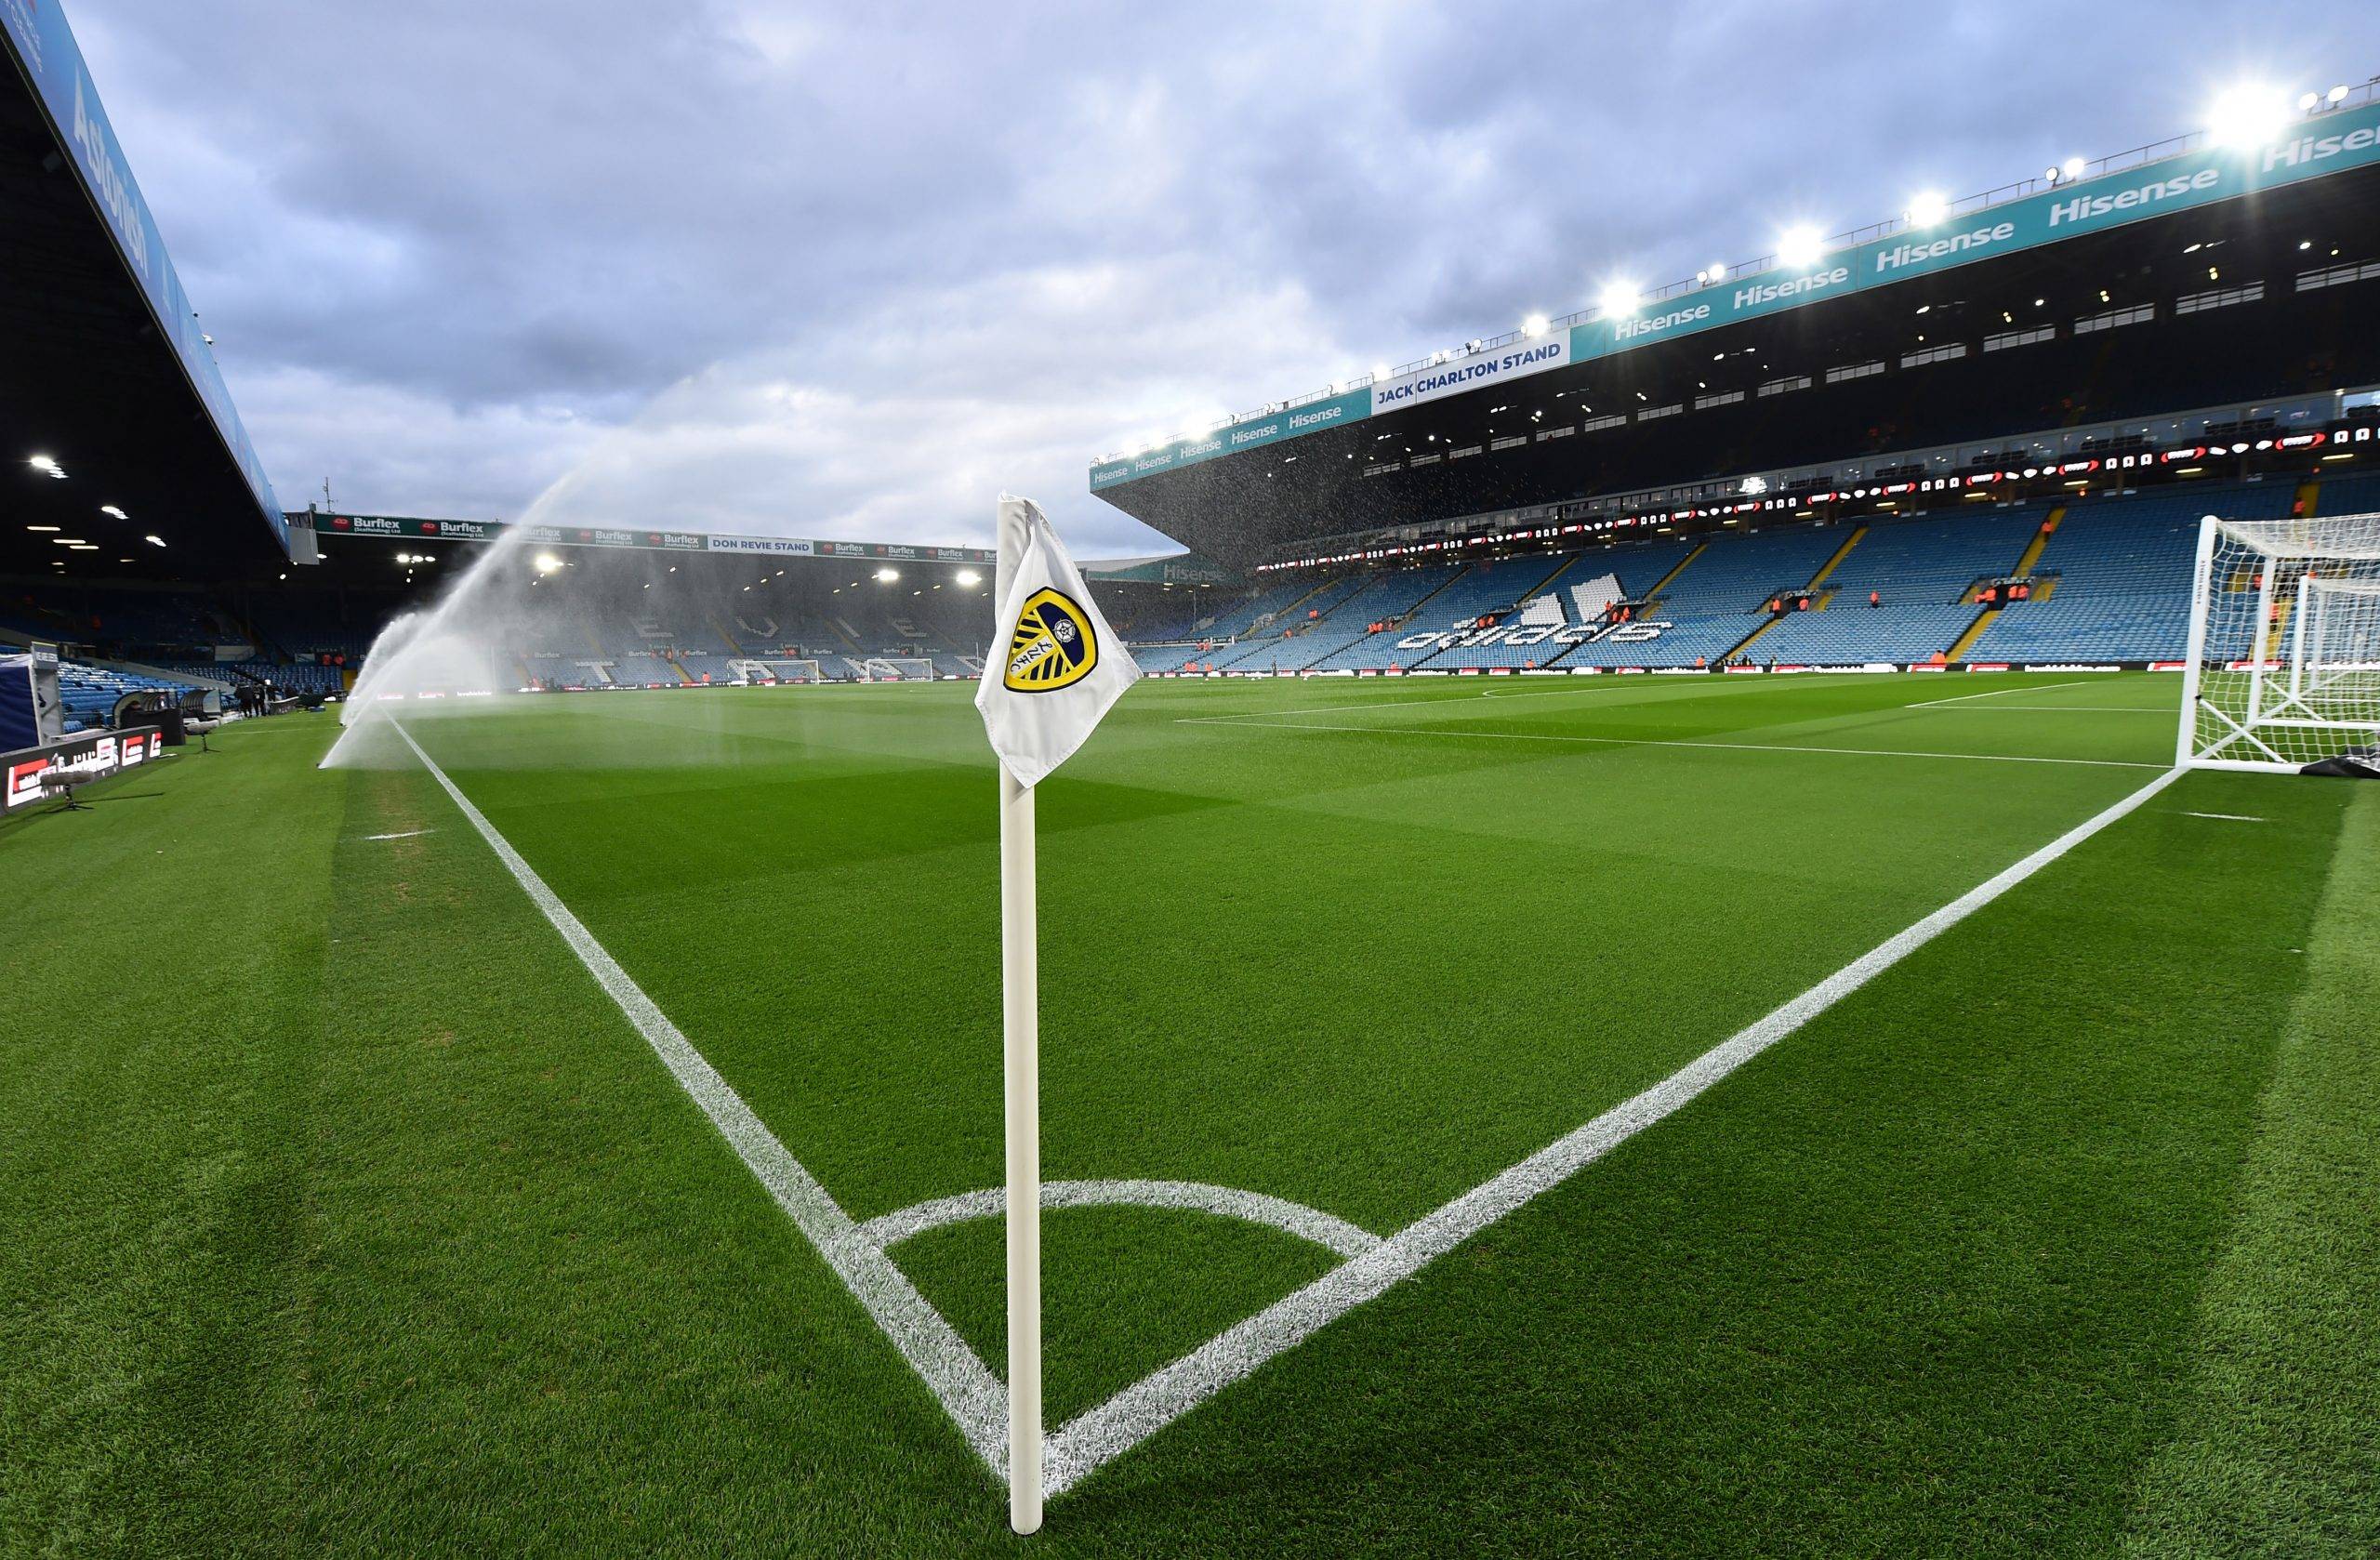 Leeds: Beren Cross shares manager update - Leeds United News